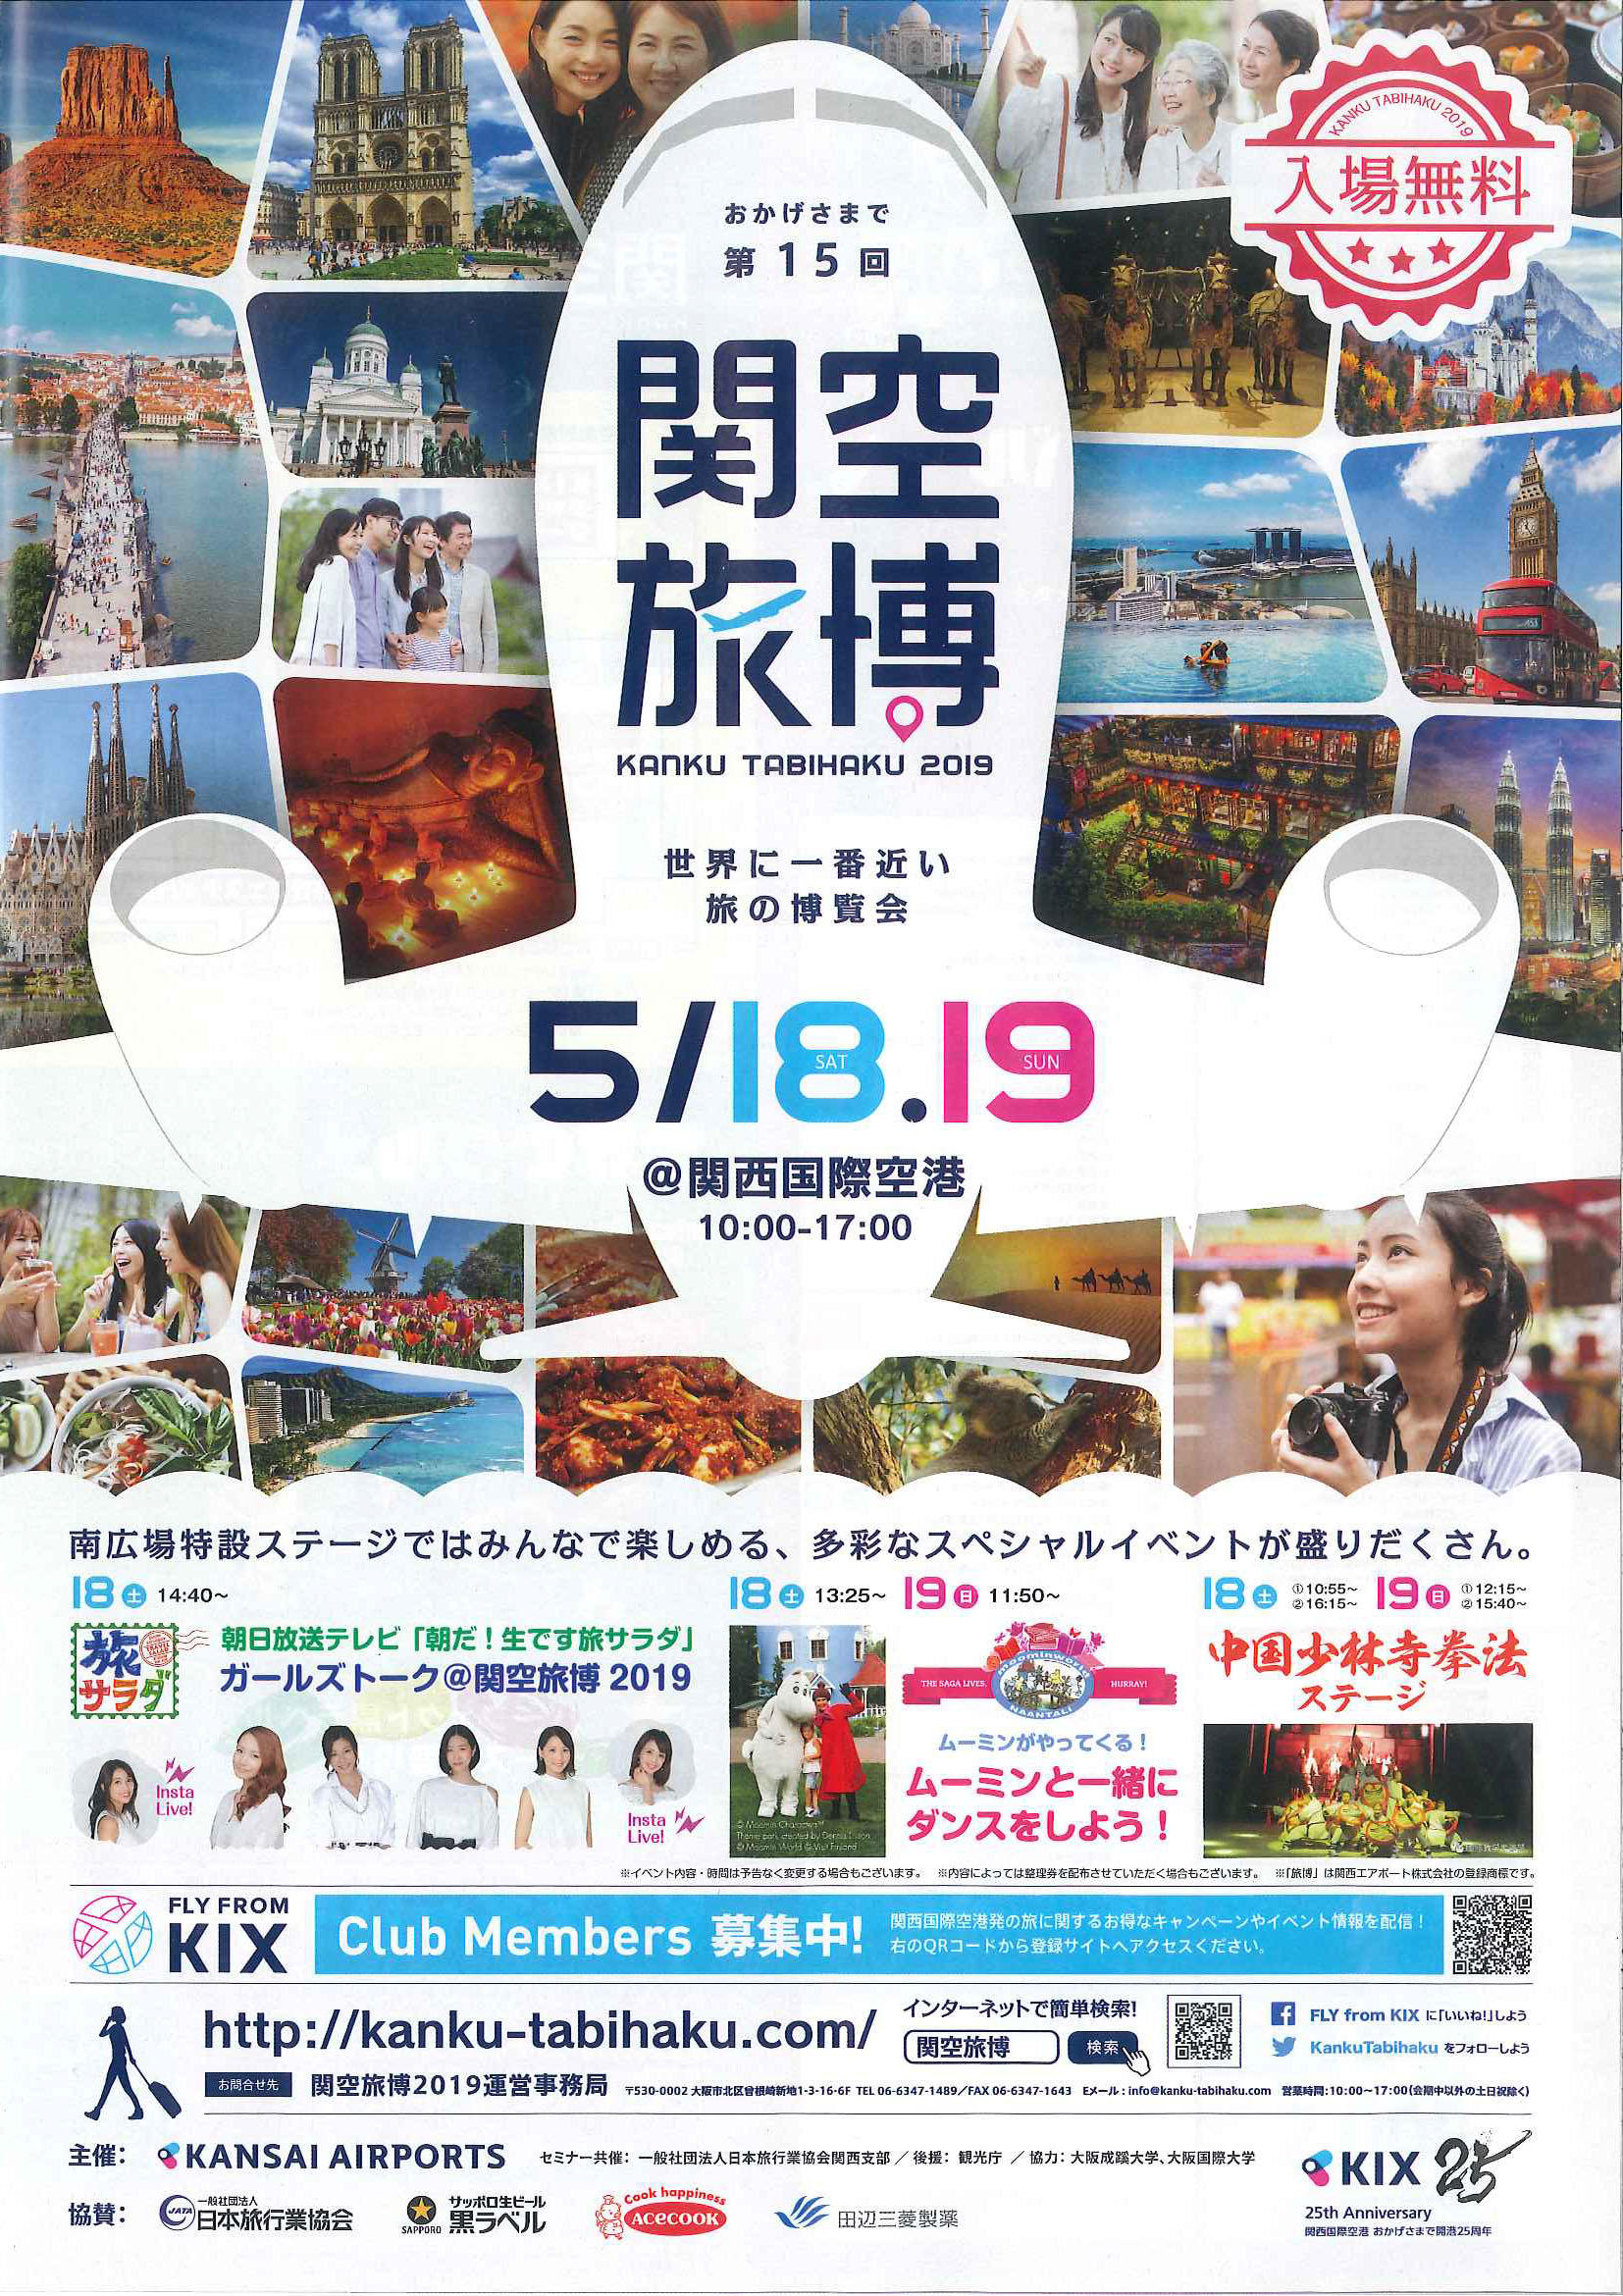 大阪国際大学の学生が、西日本最大級の旅行イベント「関空旅博2019」で運営スタッフとして協力